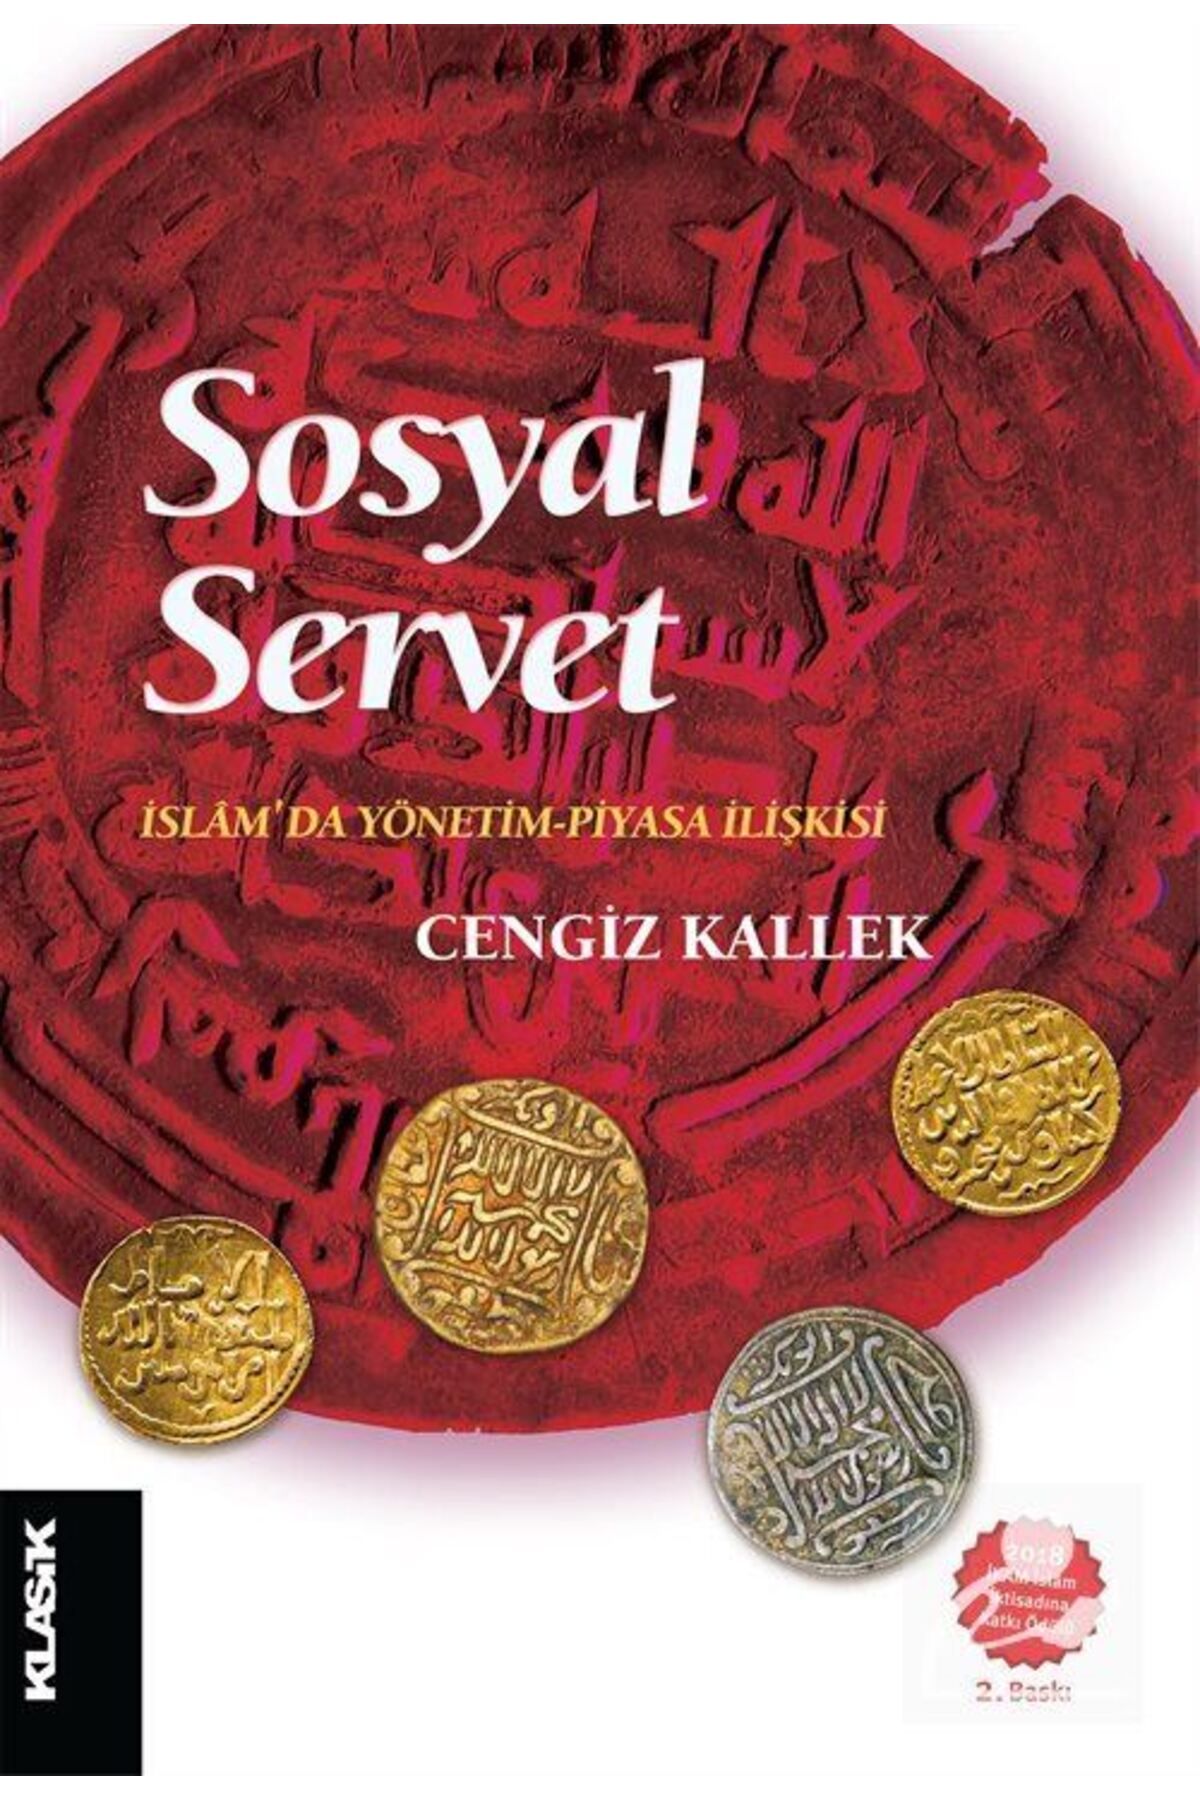 Klasik Yayınları Sosyal Servet & Islam'da Yönetim-piyasa Ilişkisi